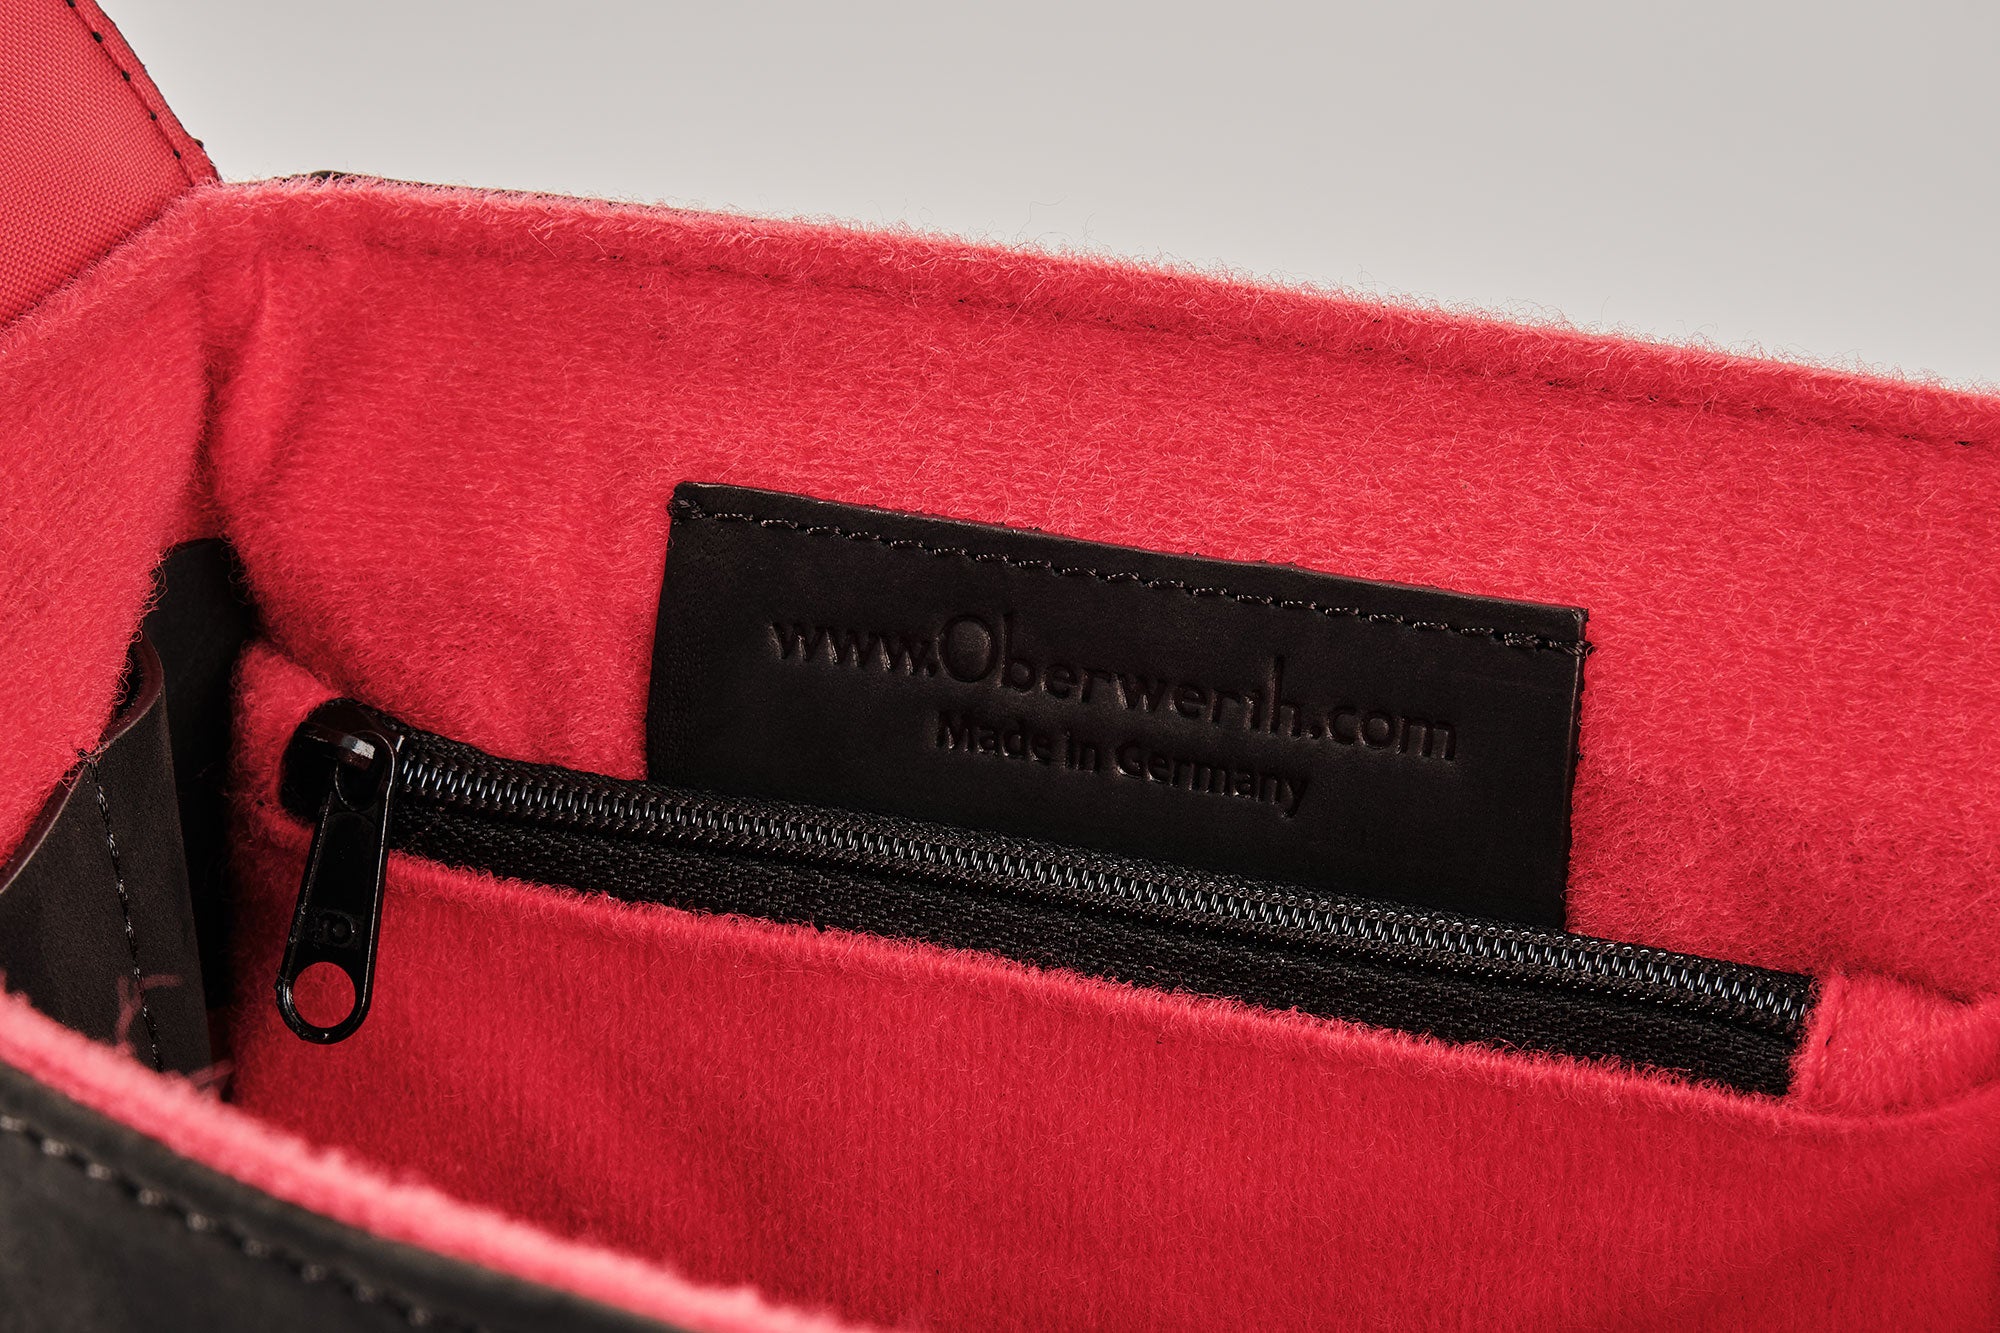 The M Bag® - Leica M Bag !Trade Fair Good!